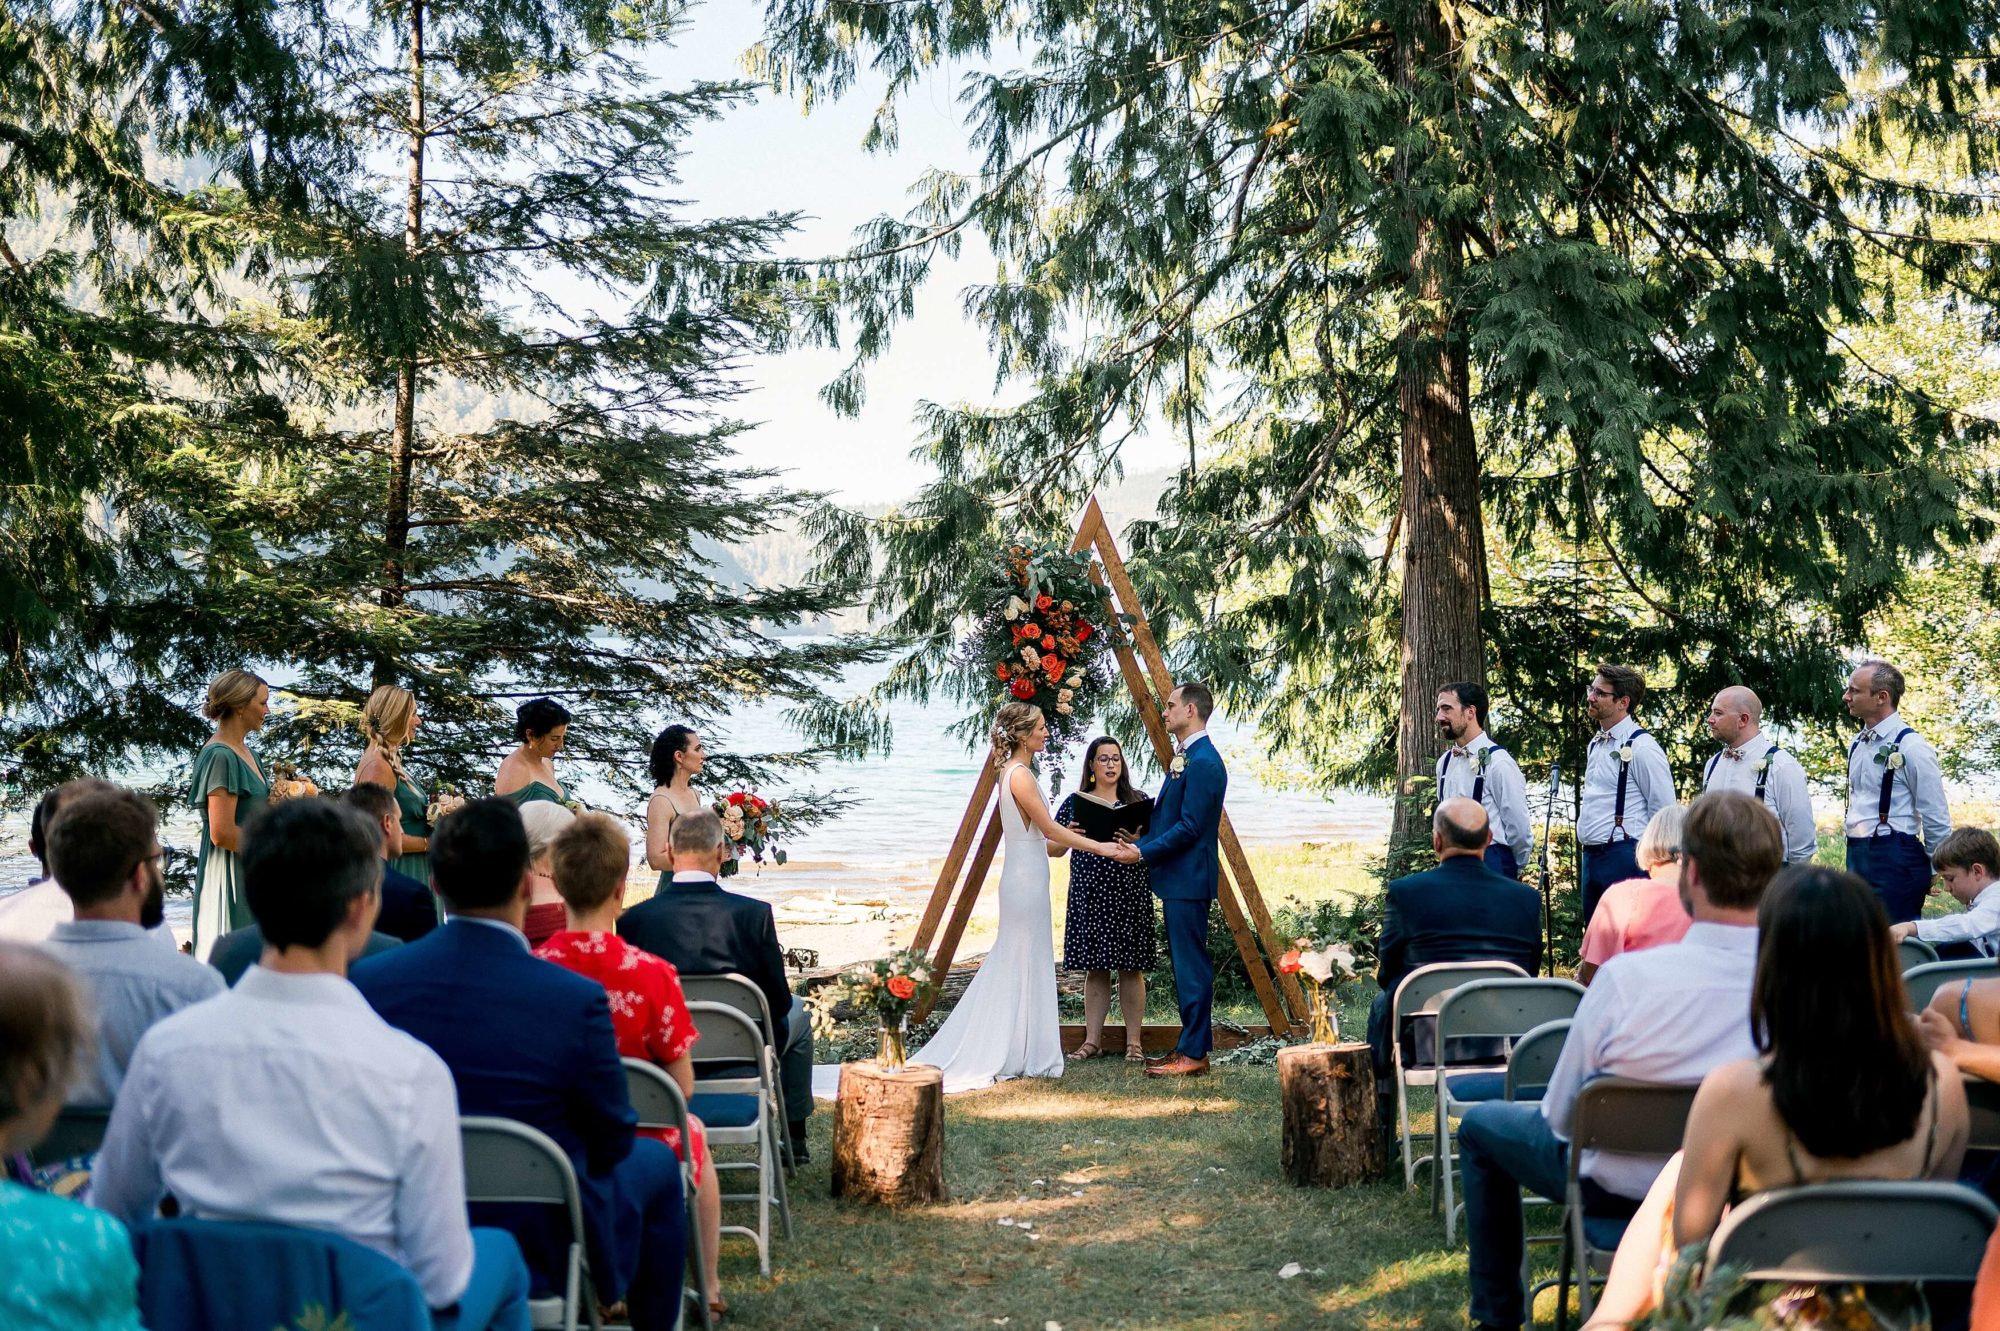 NatureBridge Wedding ceremony under the trees